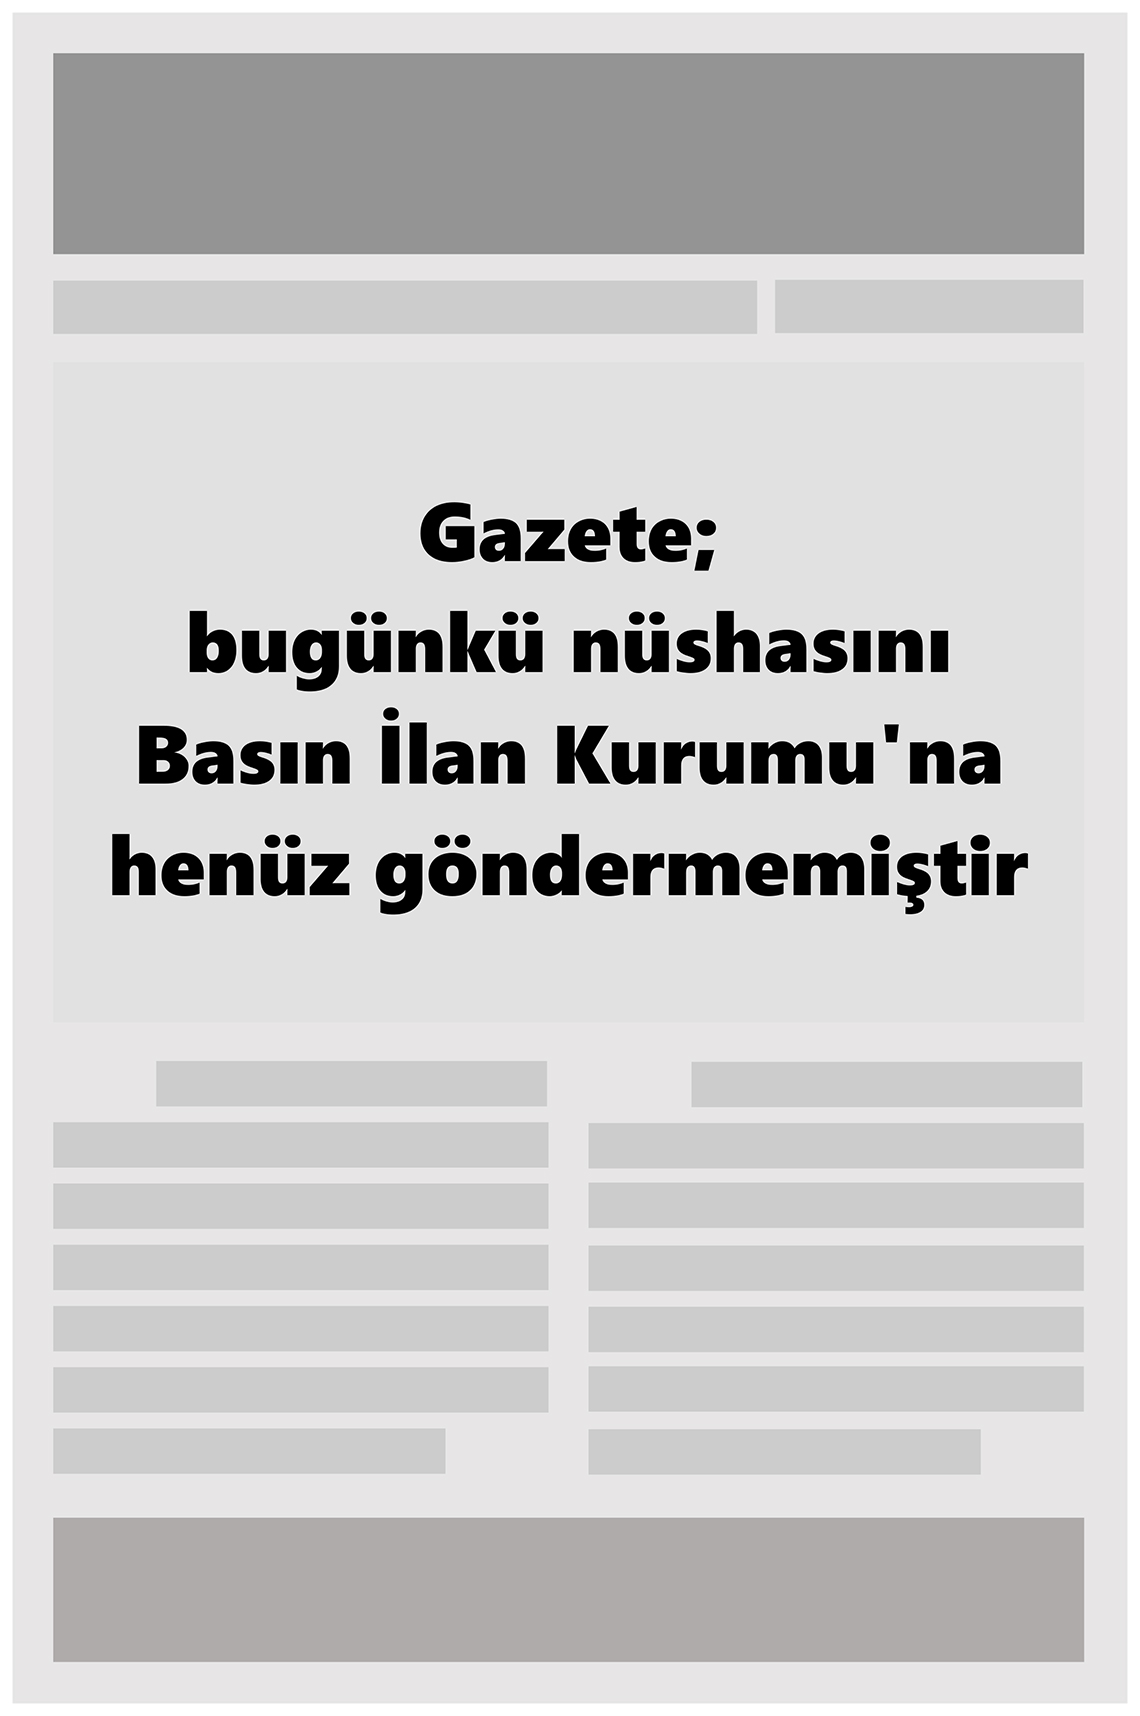 17 Ocak 2022 Karadeniz'de Sonnokta Gazete Manşeti